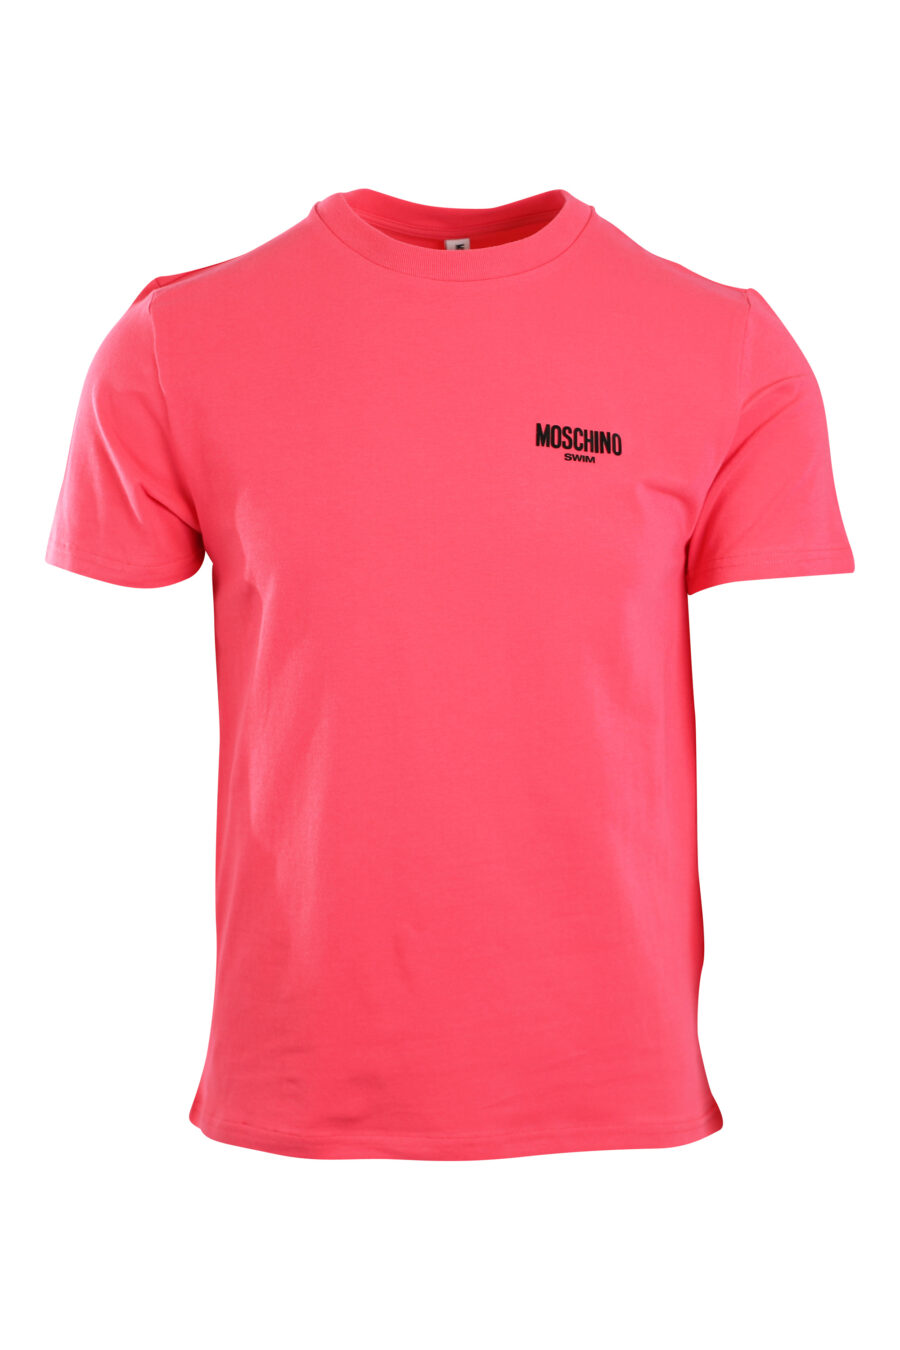 Fuchsiafarbenes T-Shirt mit Mini-Logo "swim" - IMG 2189